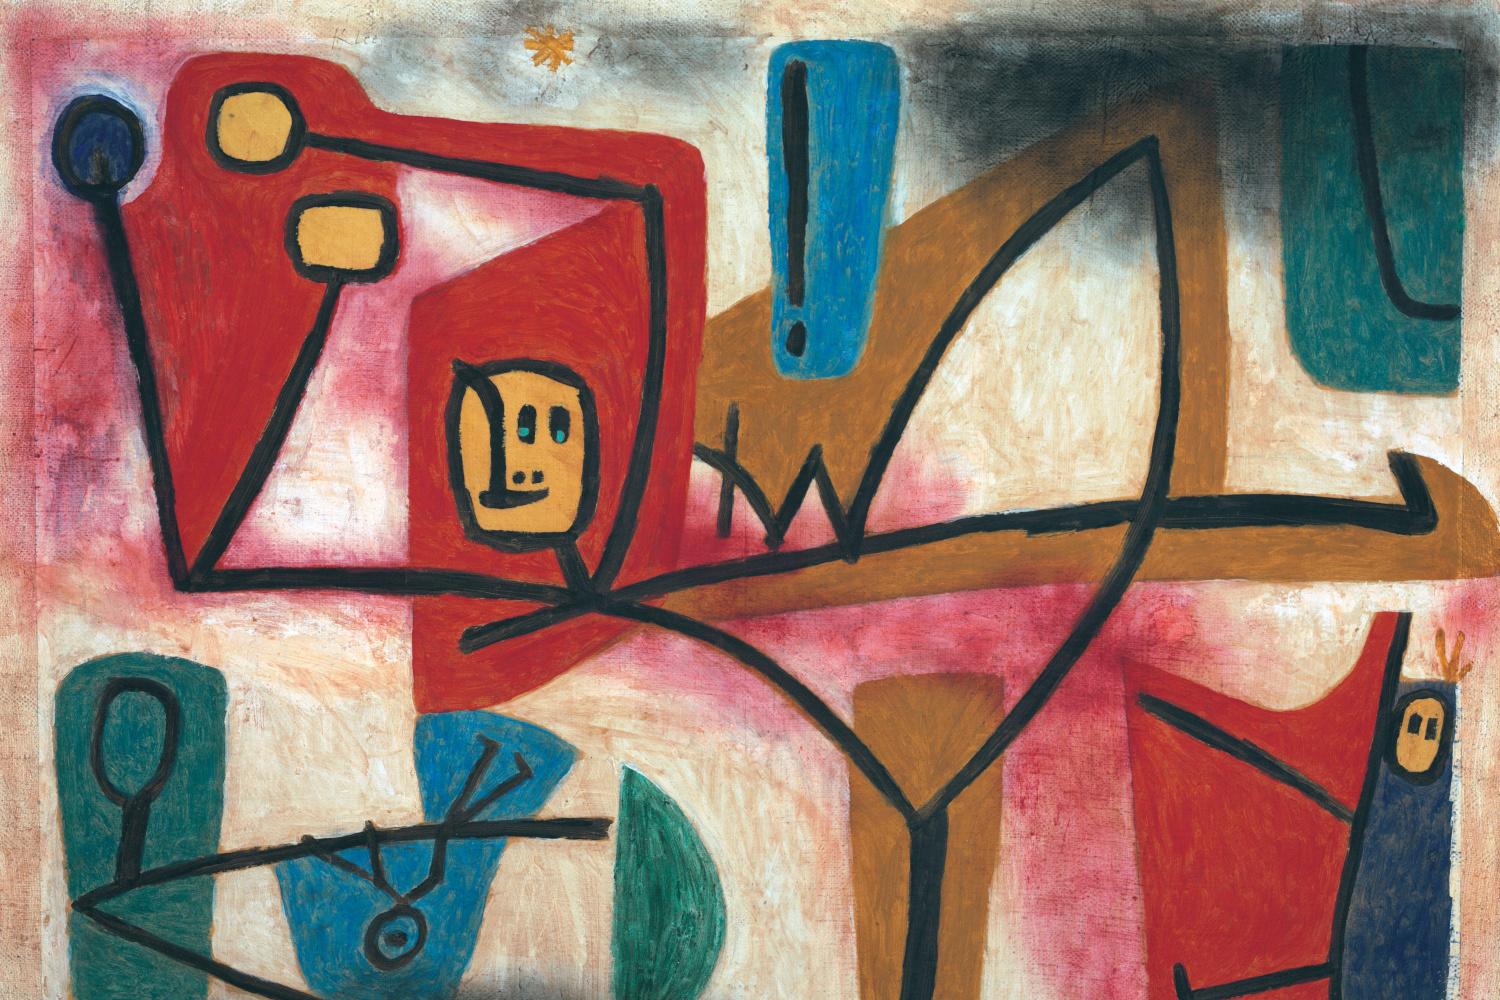 Uebermut (Arrogance), Paul Klee, 1939, Zentrum Paul Klee